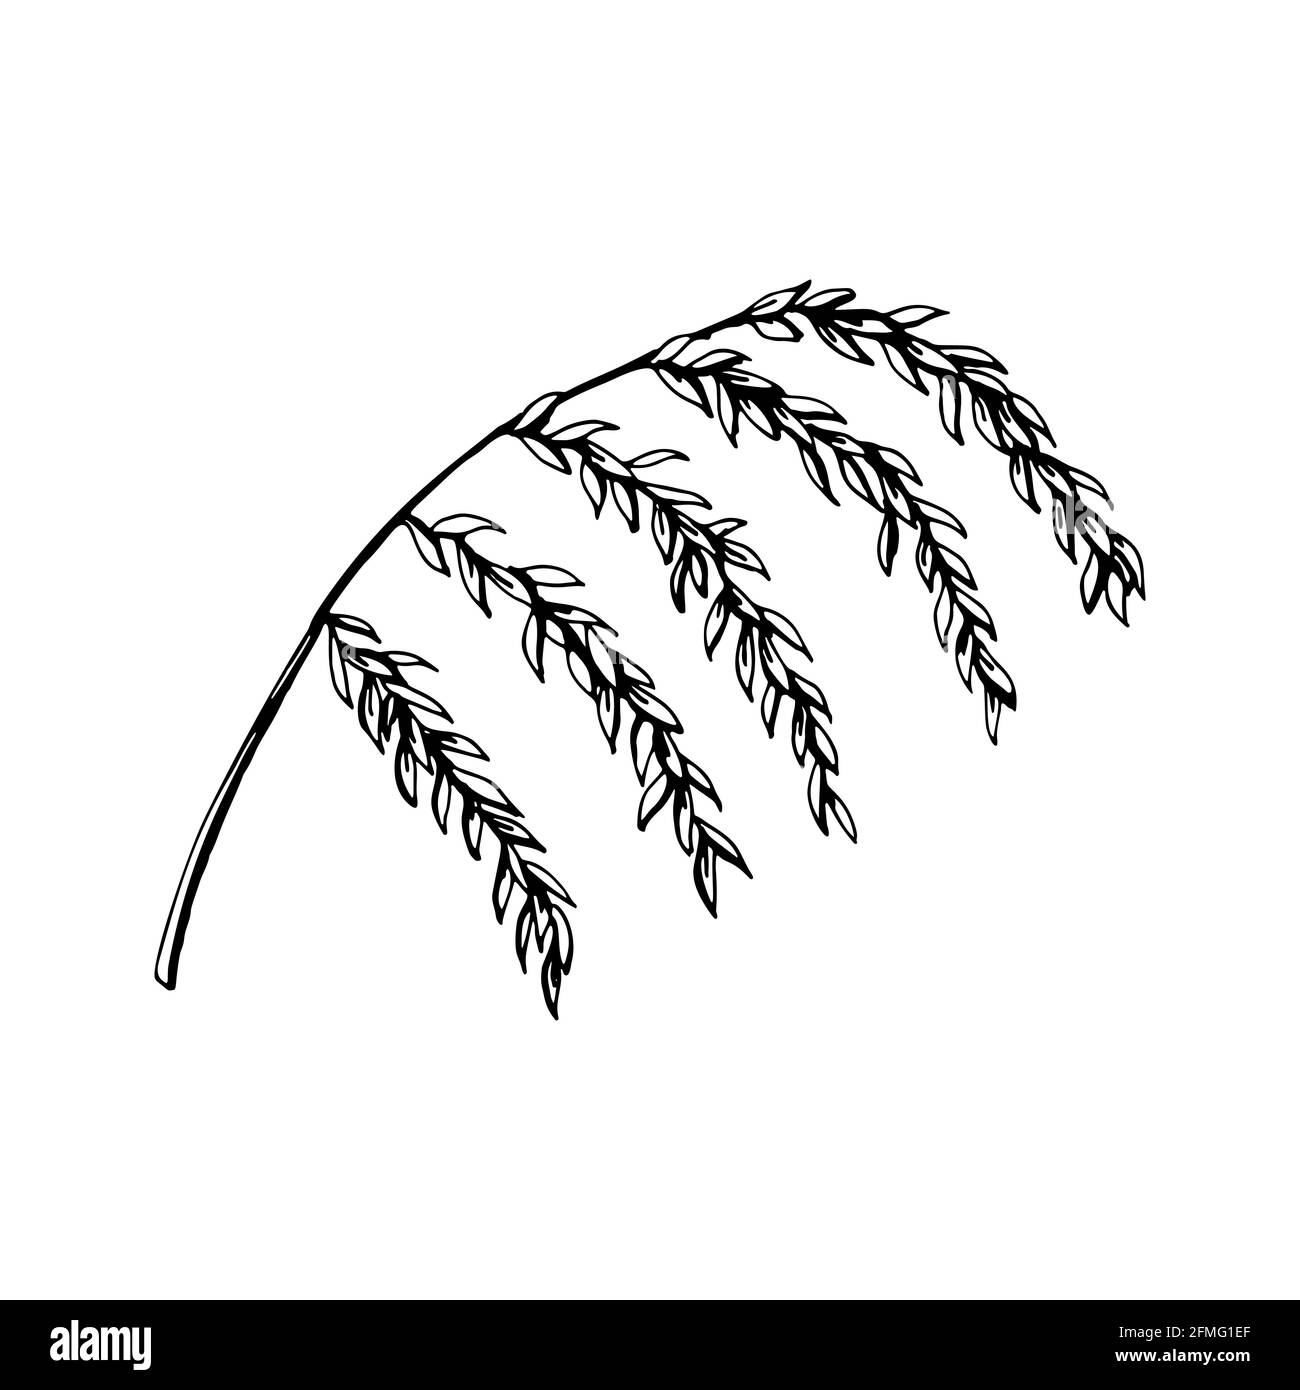 Handgezeichneter Zweig mit Blättern isoliert auf weiß. Vektorgrafik im Skizzenstil. Stock Vektor